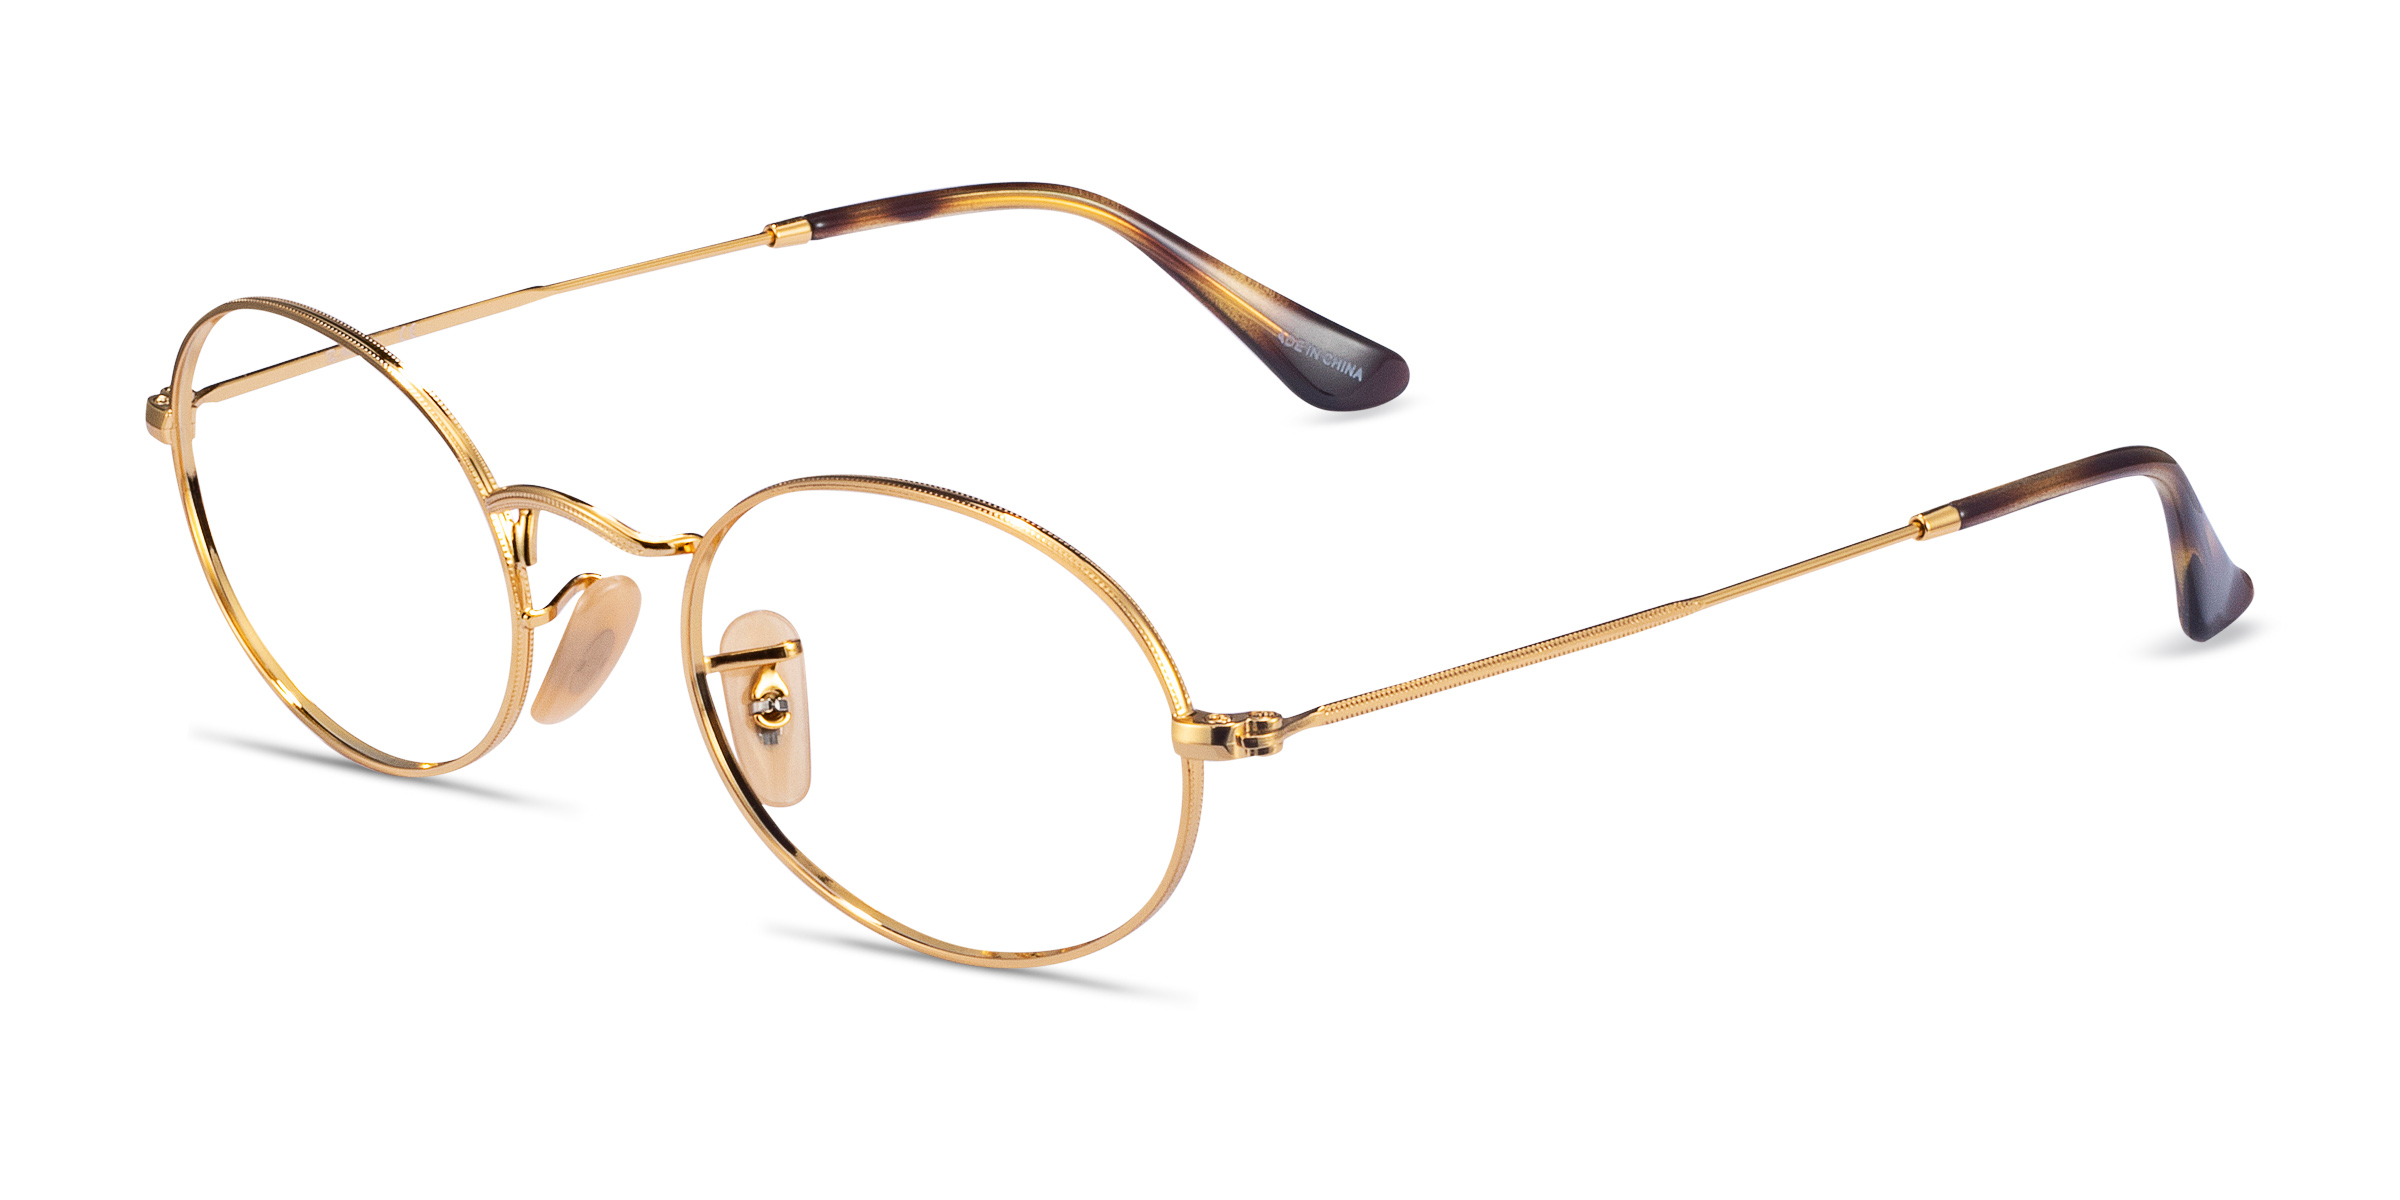 Ray Ban Rb3547v Oval Oval Gold Frame Eyeglasses Eyebuydirect